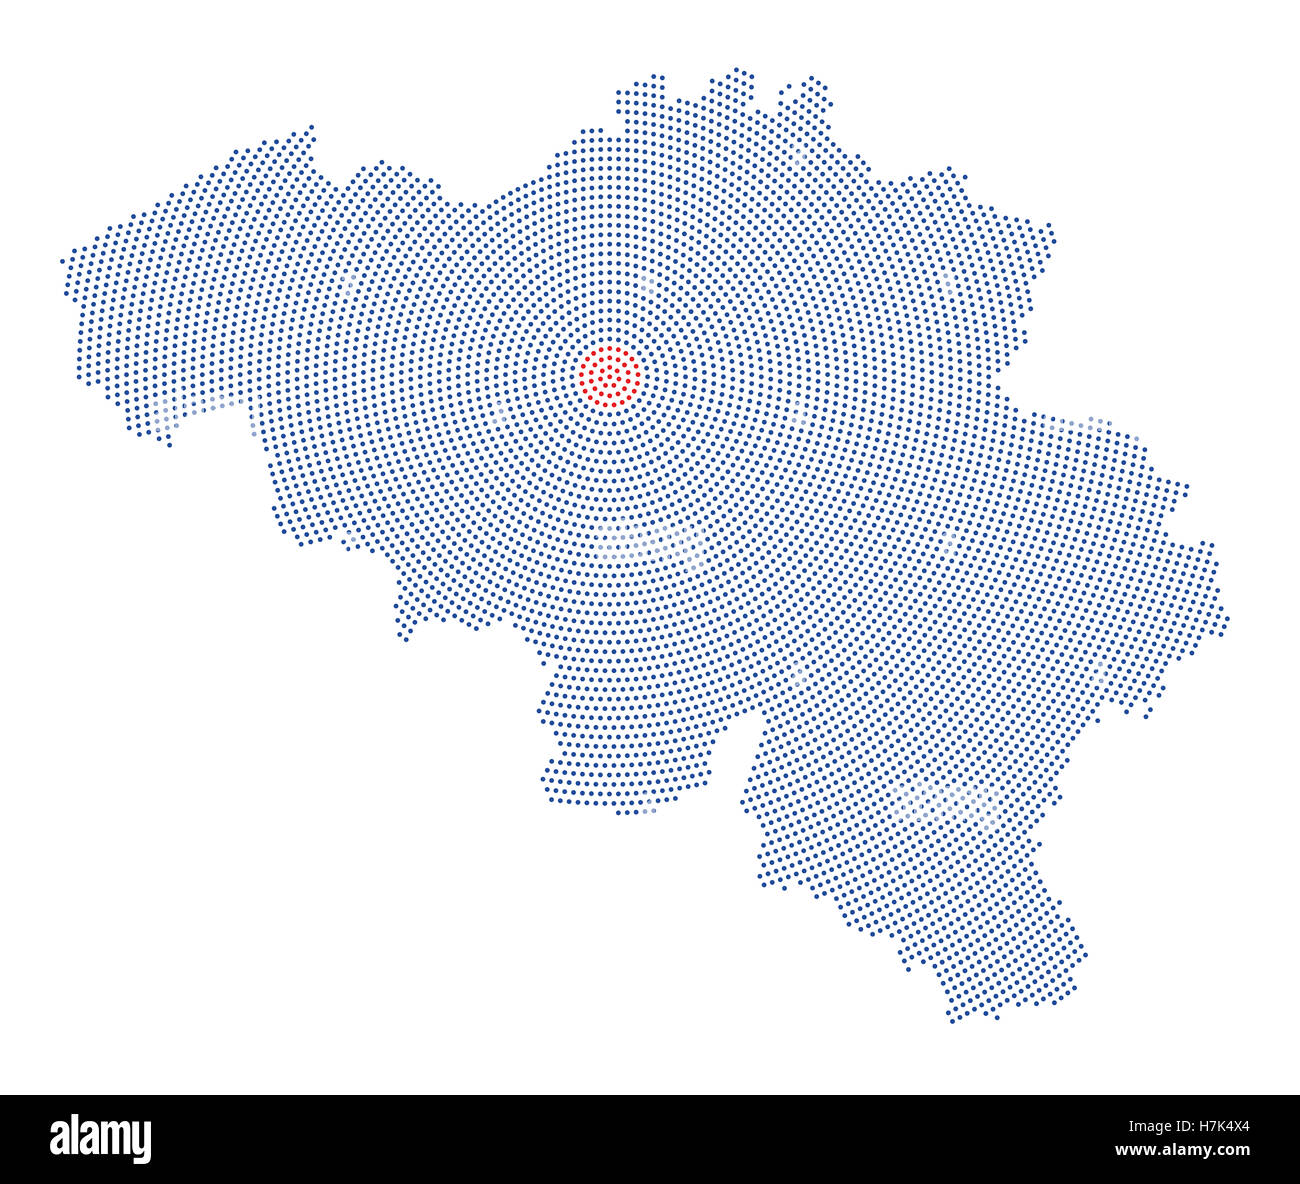 Belgien-Karte radial Punktmuster. Blaue Punkte gehen von den roten gepunkteten Hauptstadt Brüssel nach außen und bilden die Land-Silhouette. Stockfoto